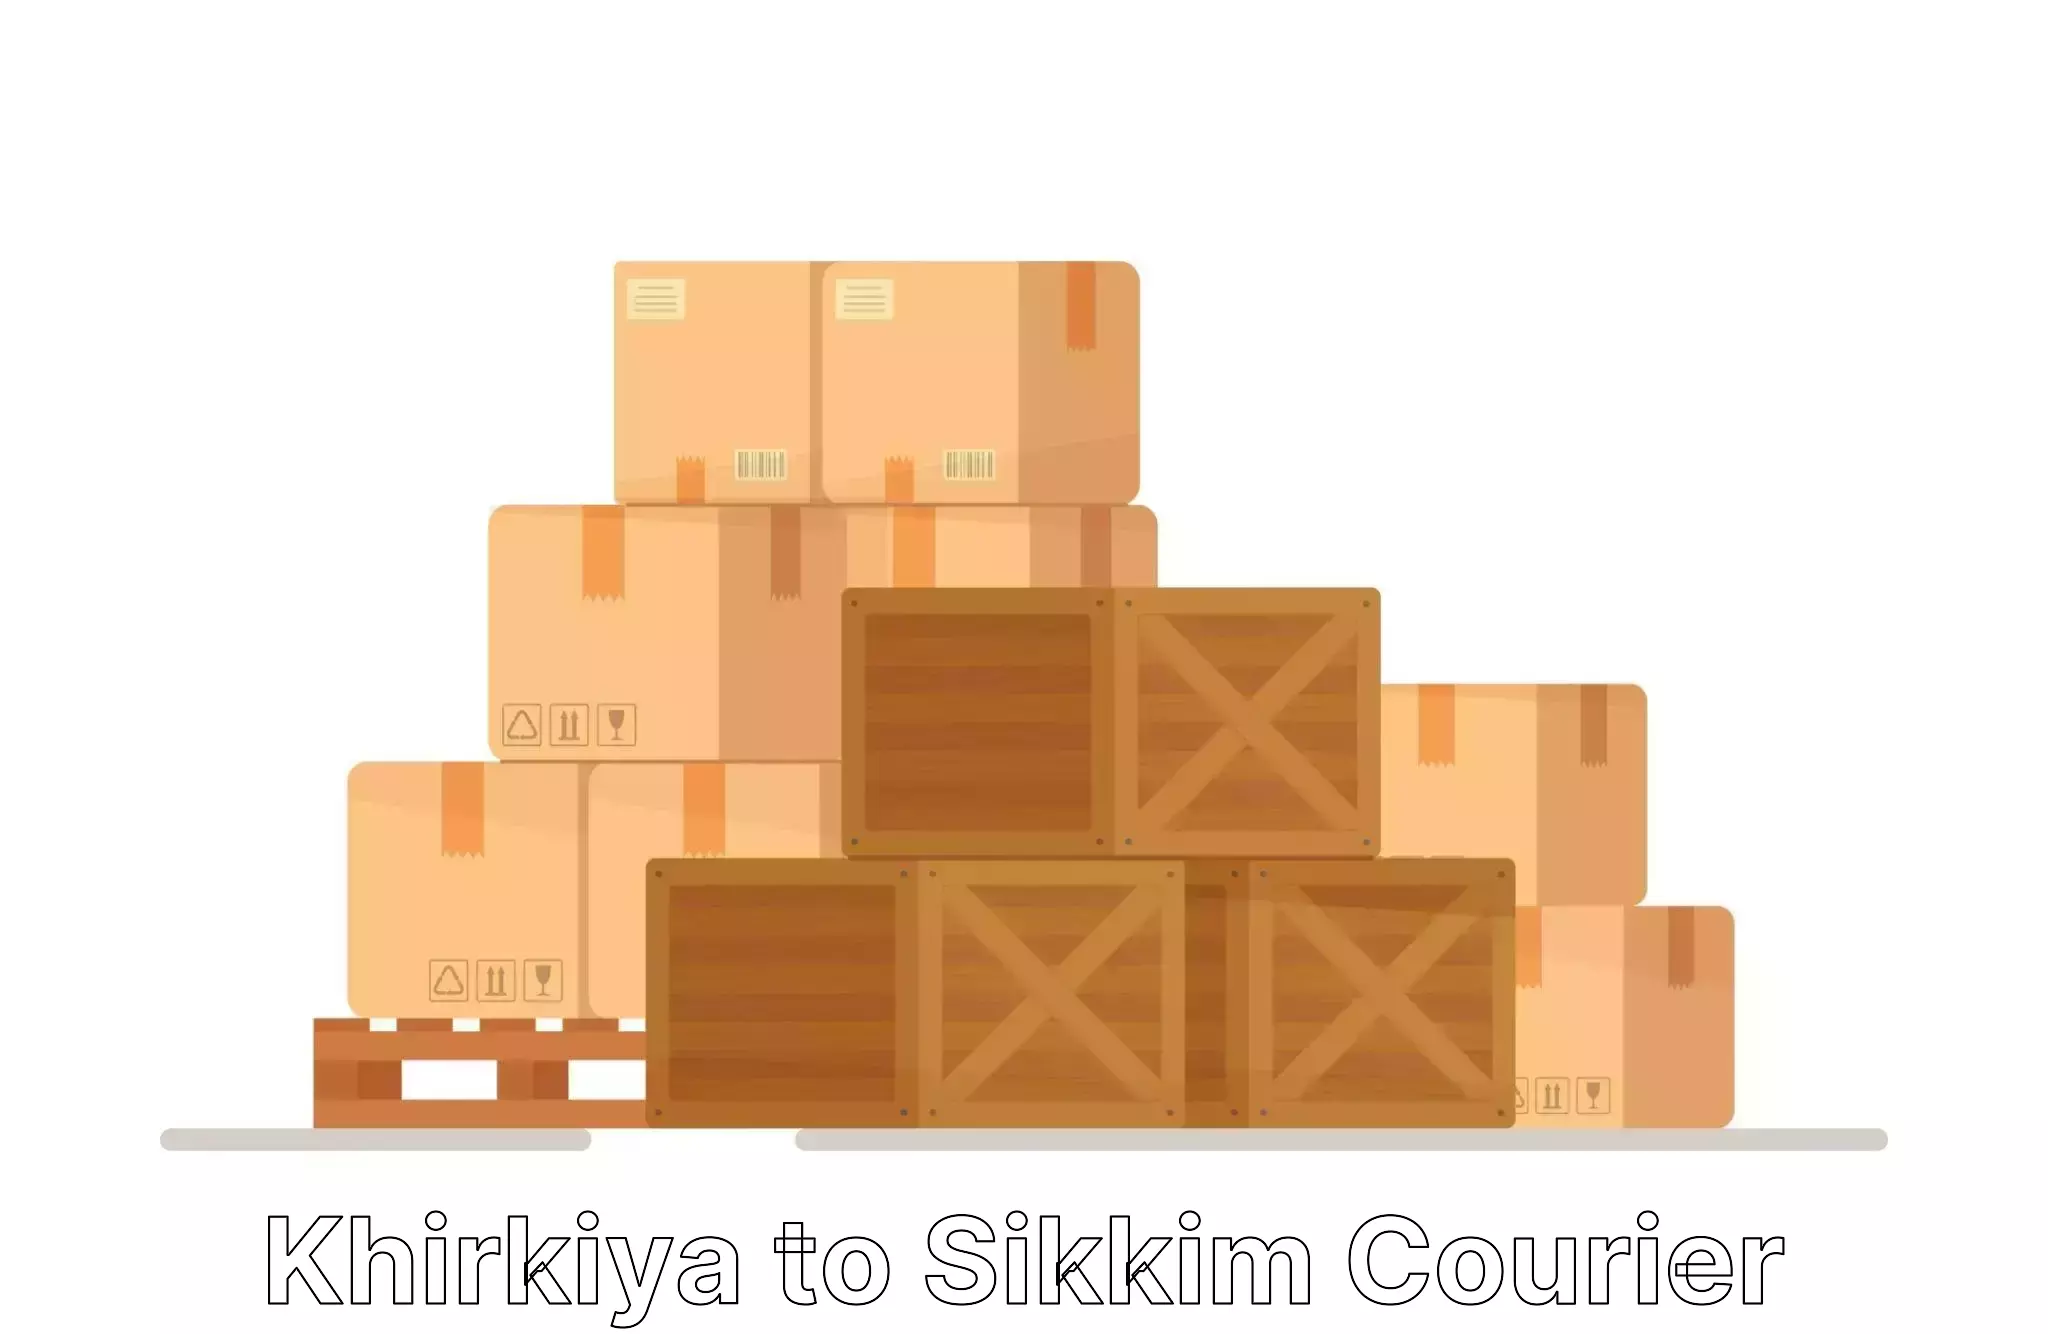 Reliable furniture shifting in Khirkiya to Geyzing